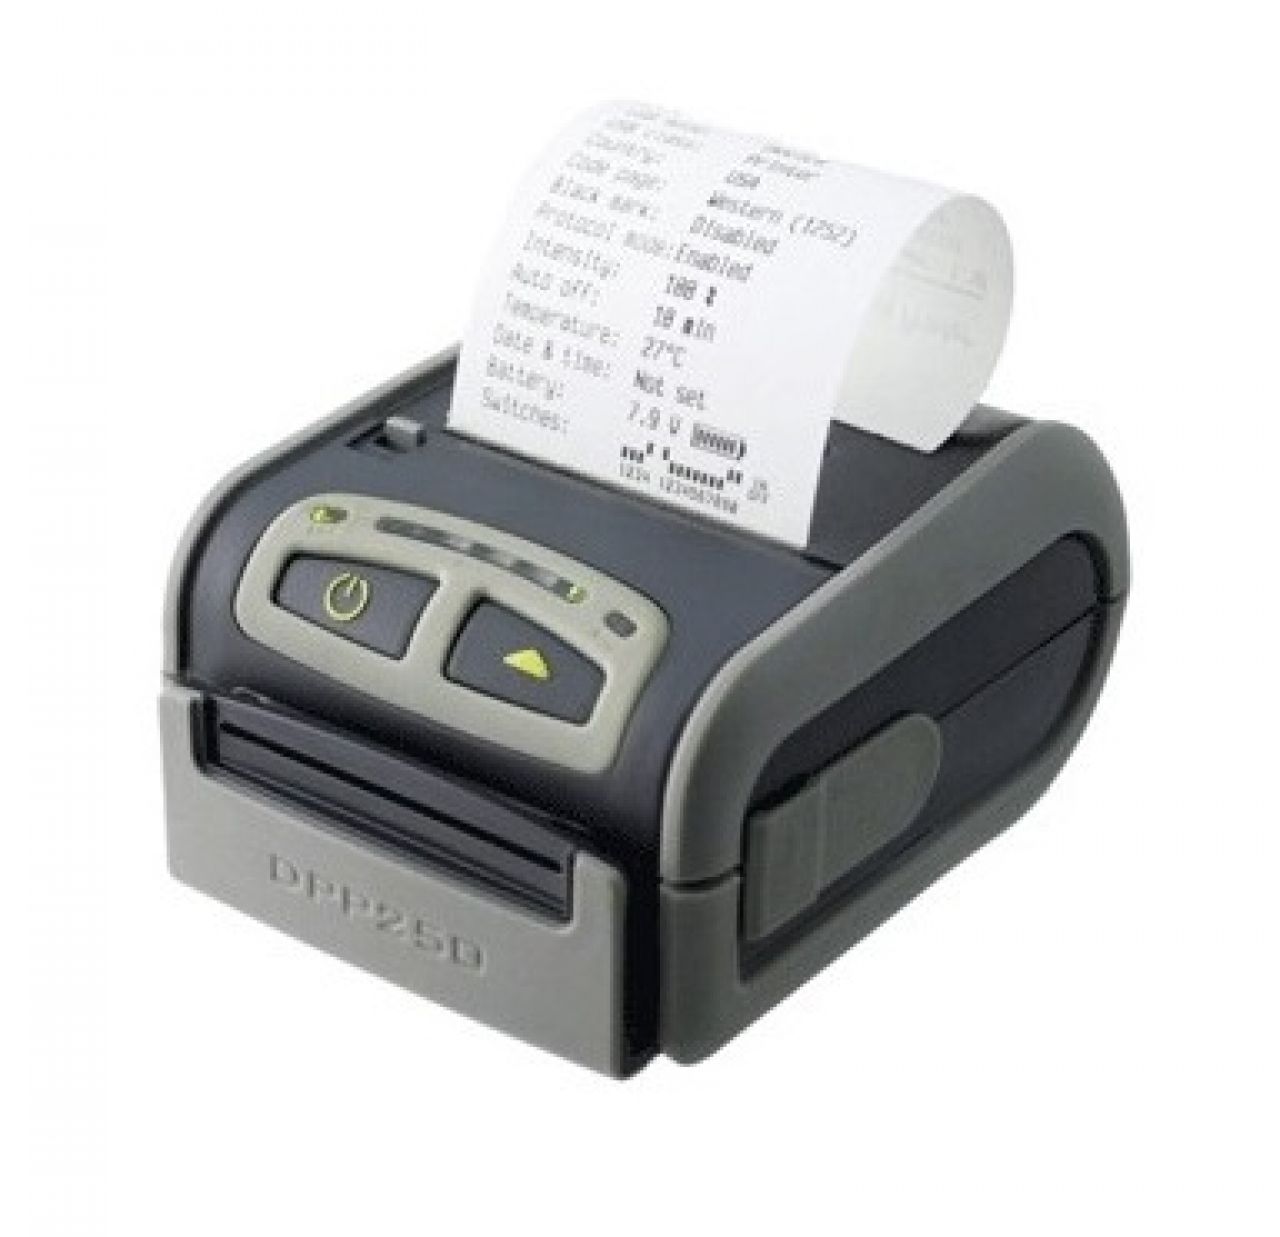 Мобильный принтер чеков Экселлио DPD-250 